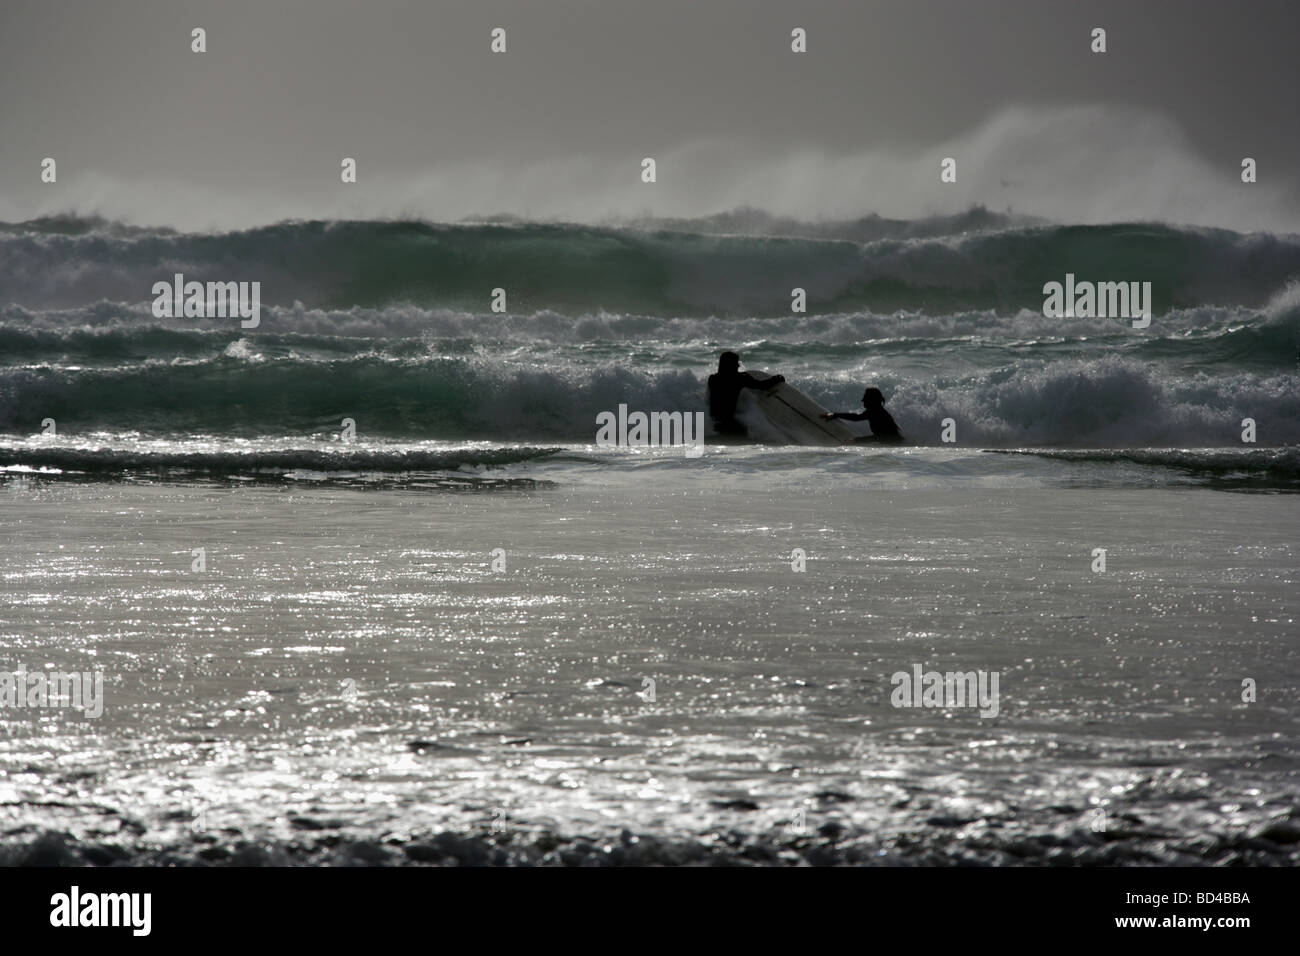 Domaine de la baie de Watergate, en Angleterre. La silhouette vue de deux surfers en utilisant la même planche de surf sur une mer agitée 24. Banque D'Images